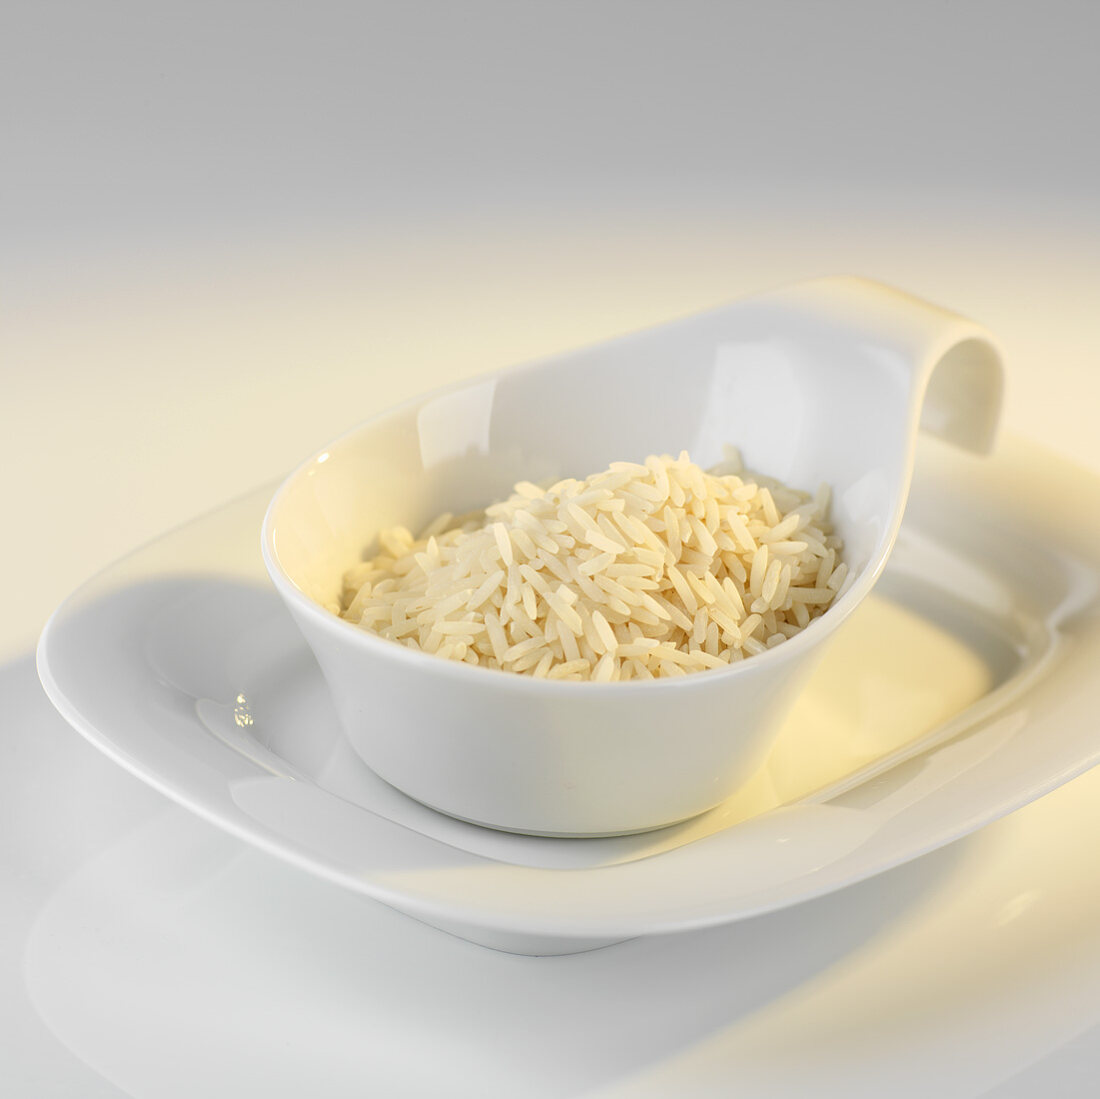 Portion roher (ungekochter) Reis in einem Schälchen